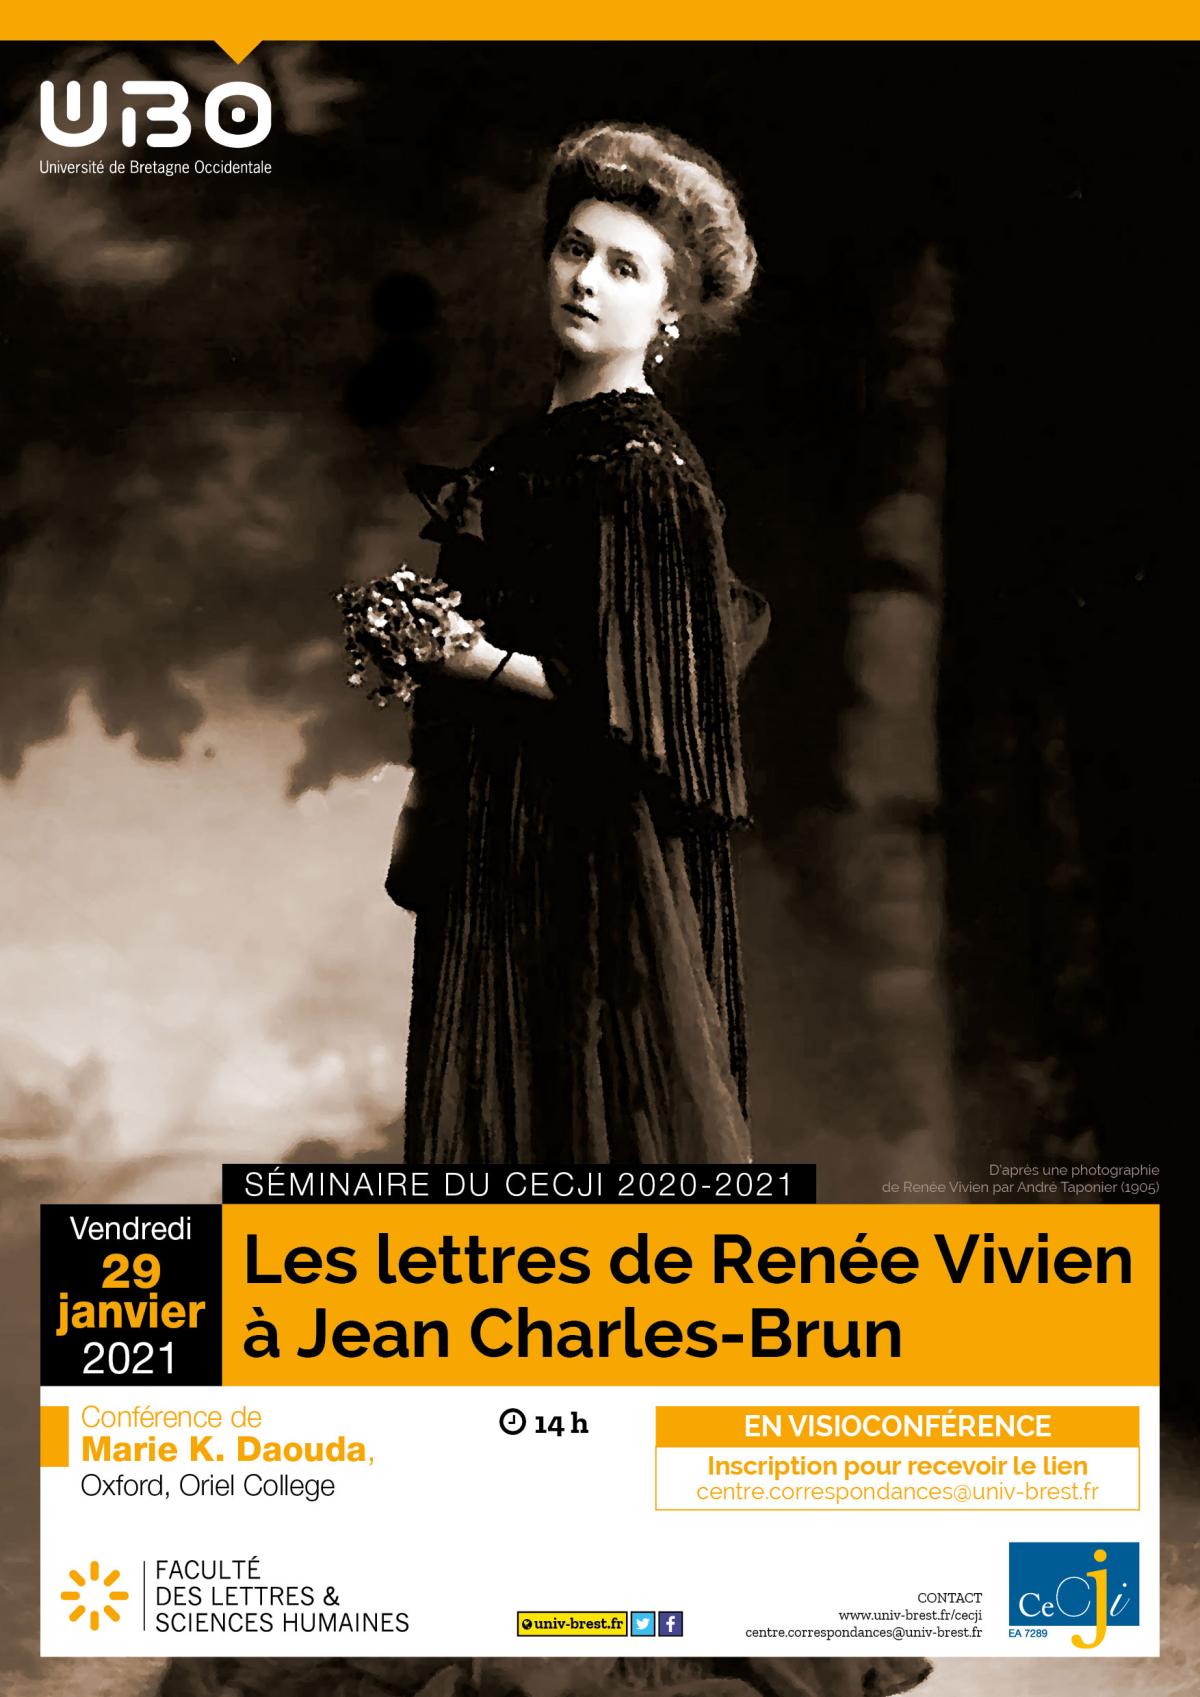 Les lettres de Renée Vivien à Jean Charles-Brun